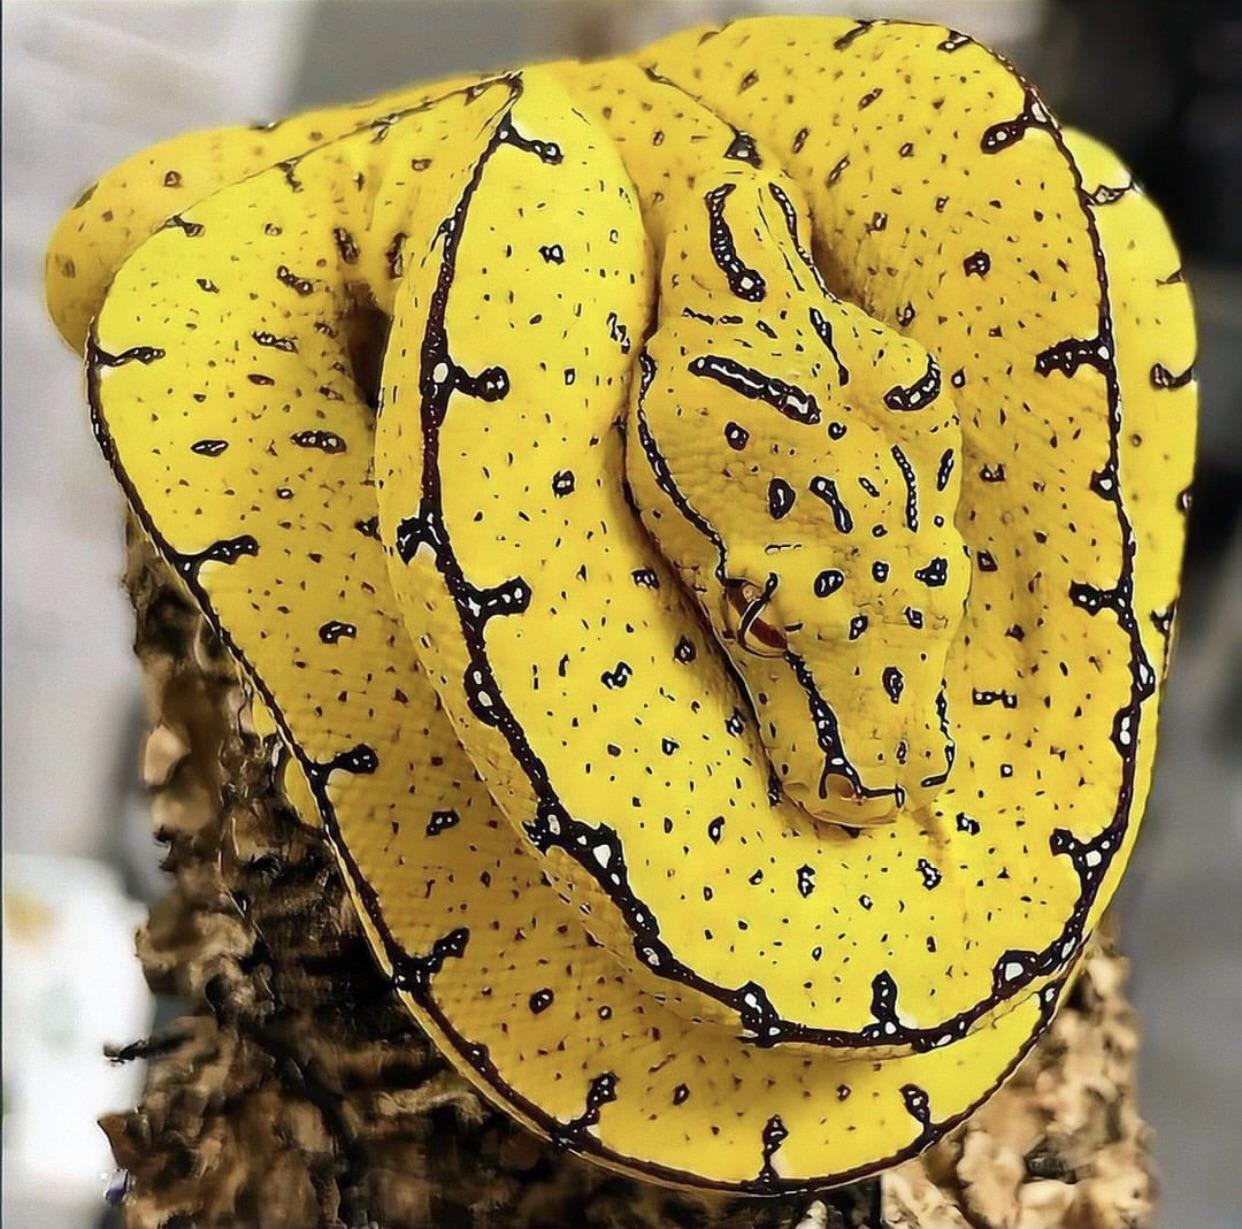 A beautiful Python